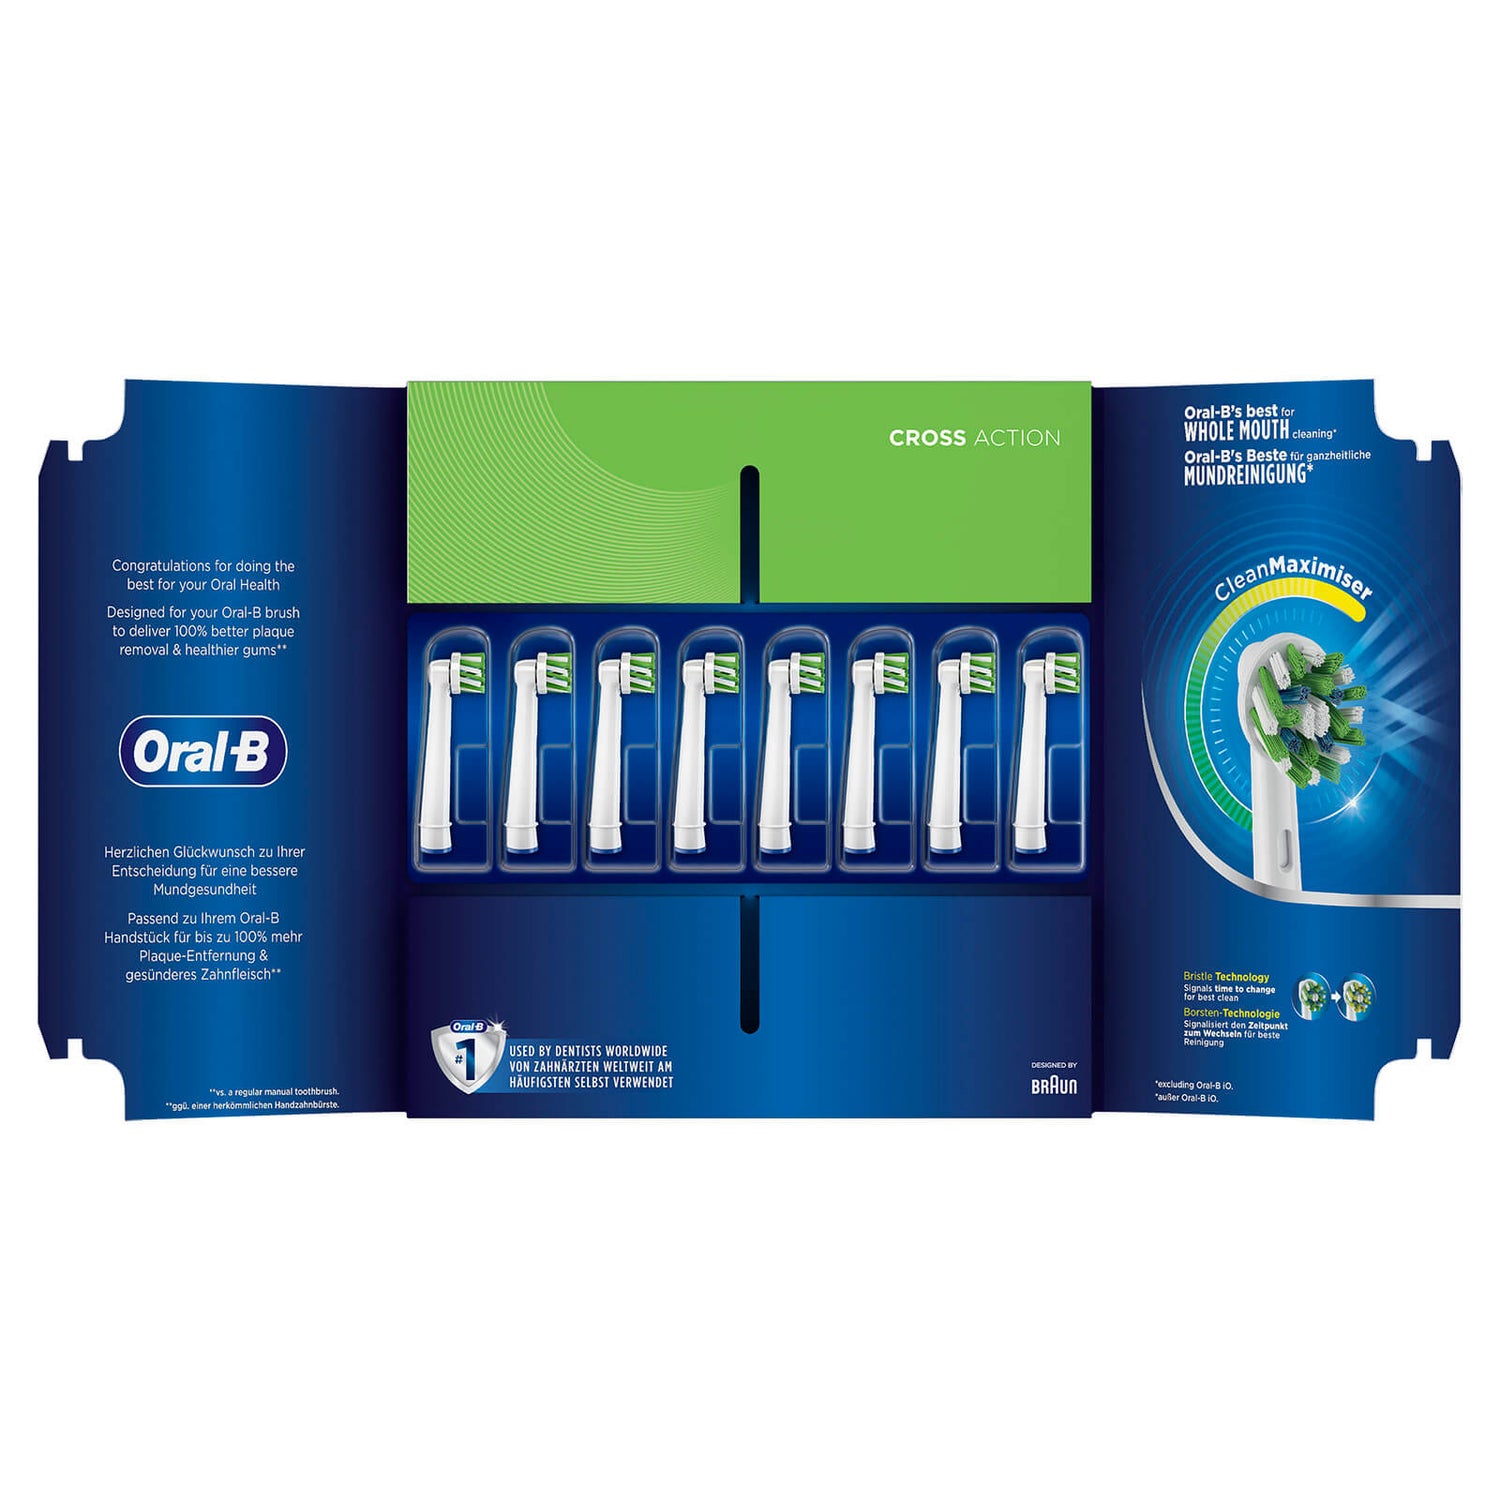 Oral-B Crossaction Opzetborstels Met CleanMaximiser, 8 Stuks